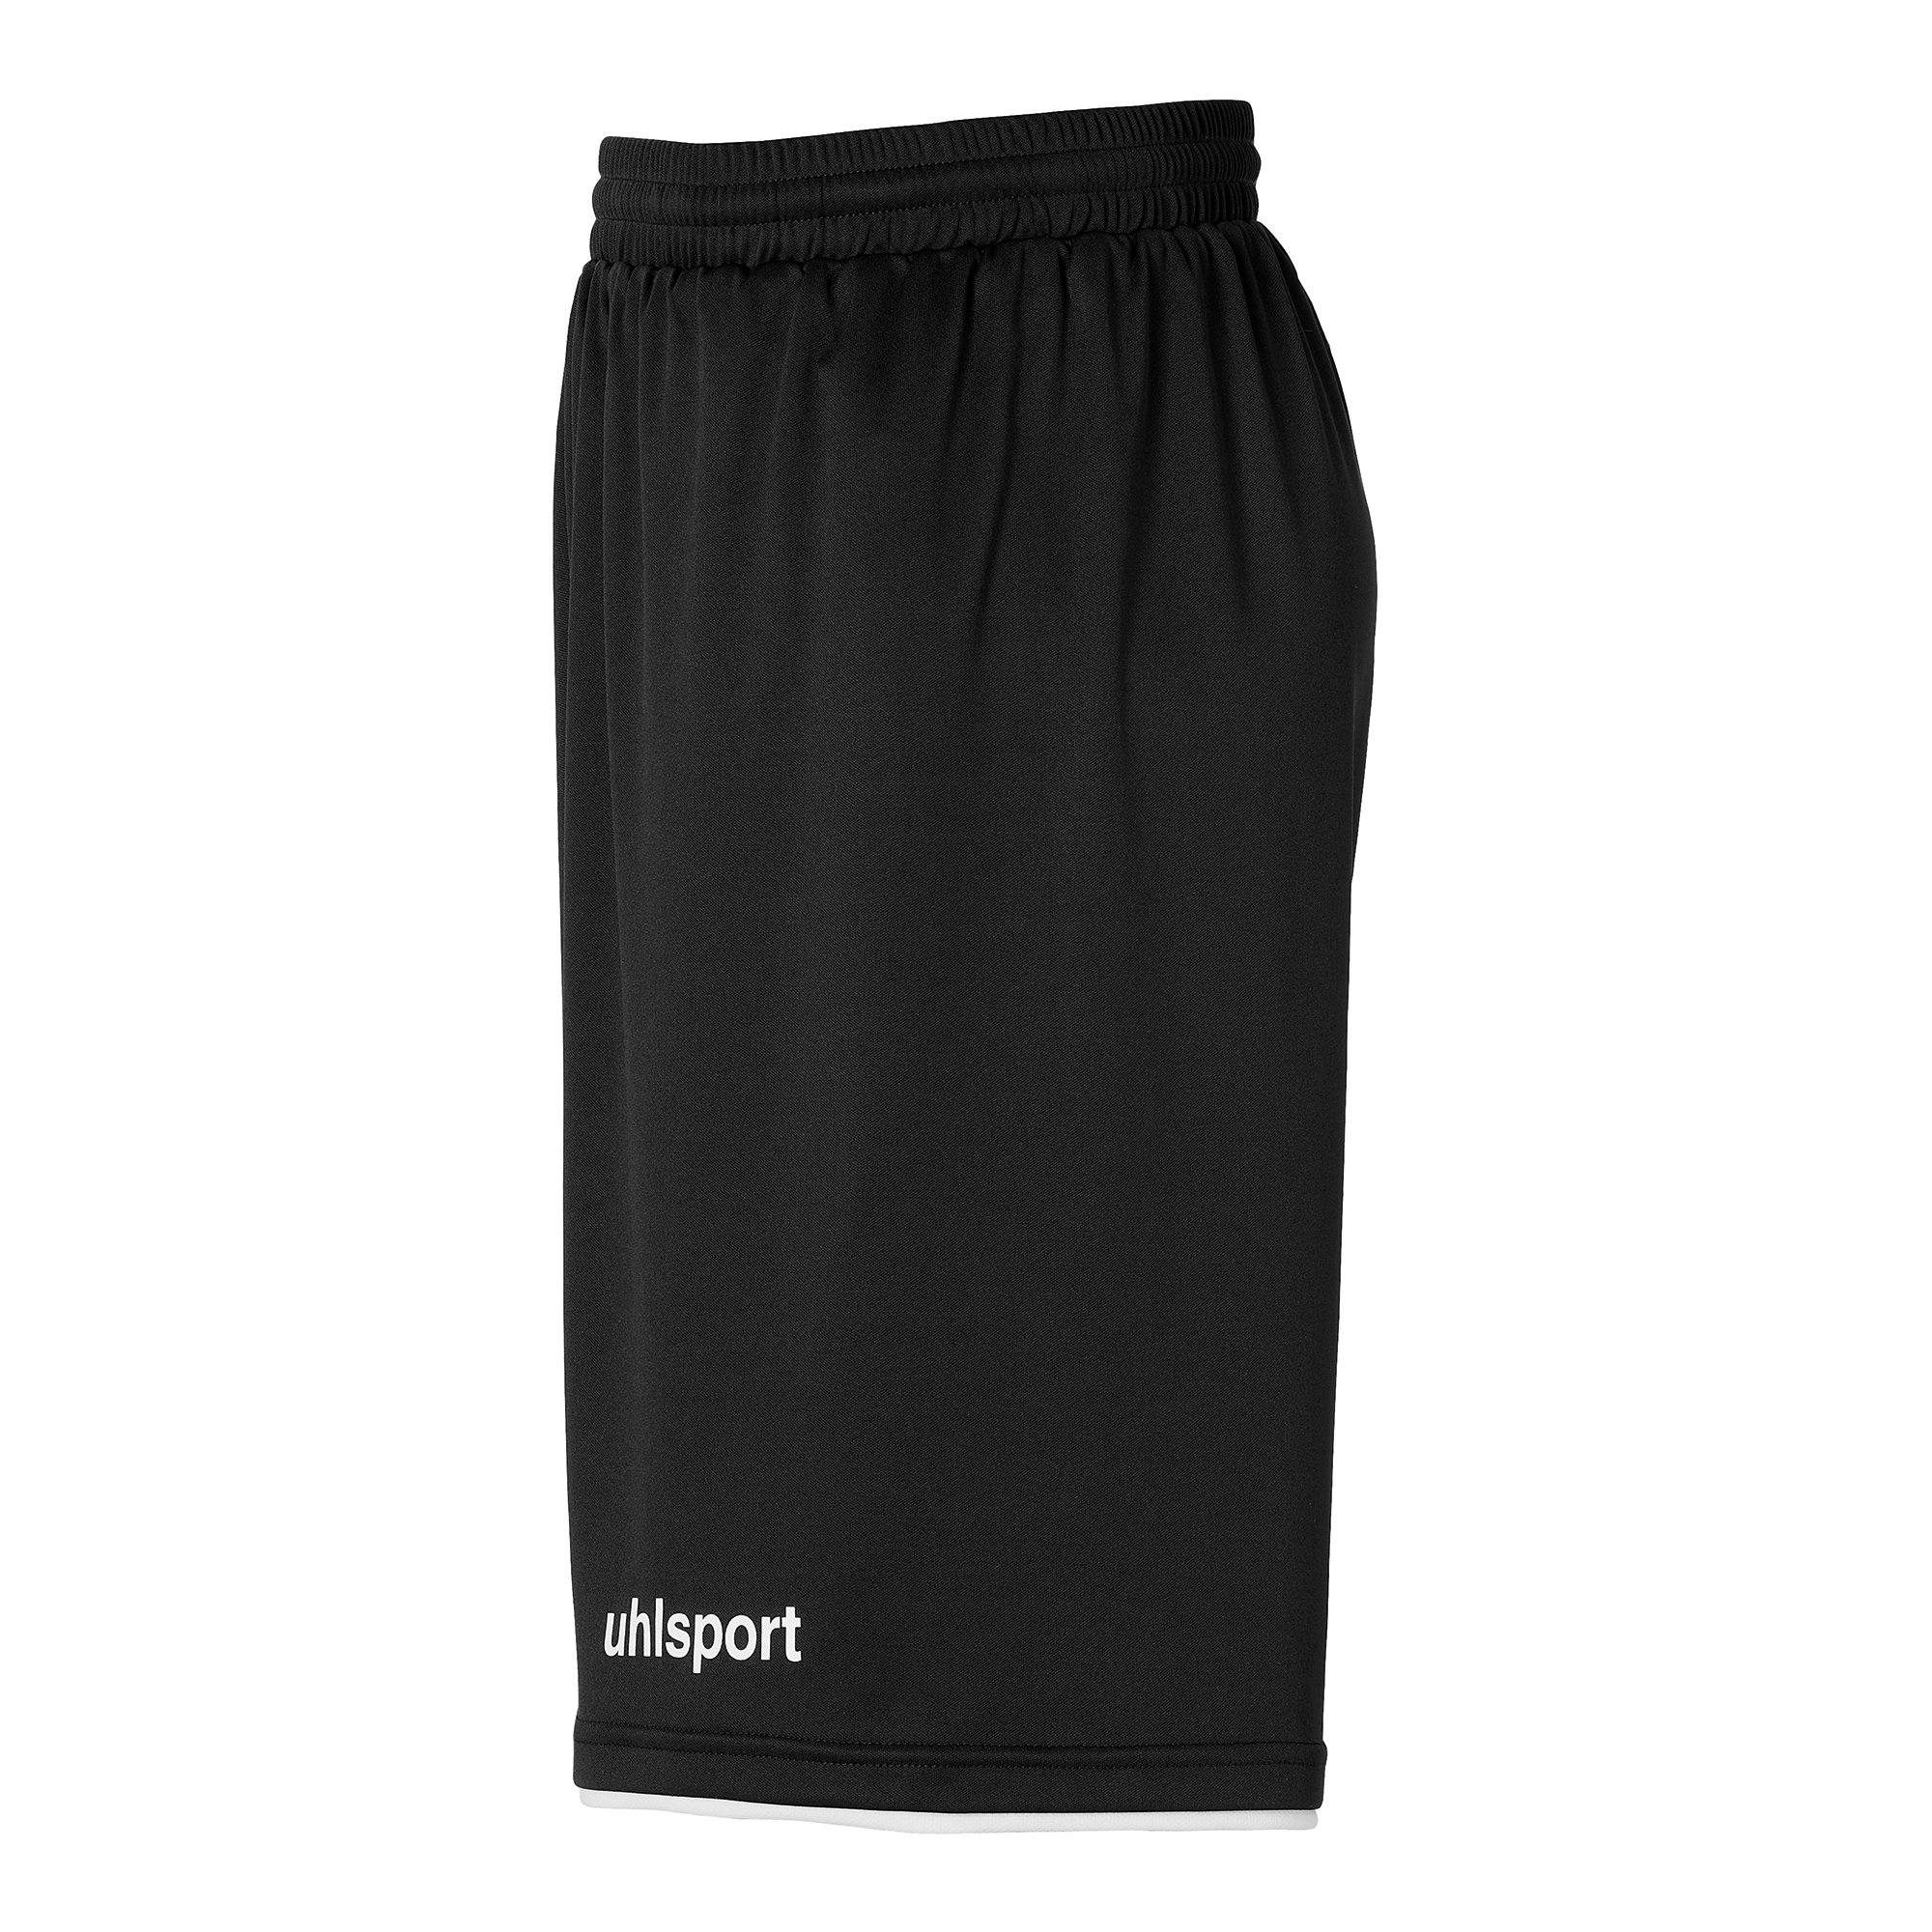 Uhlsport Club Shorts